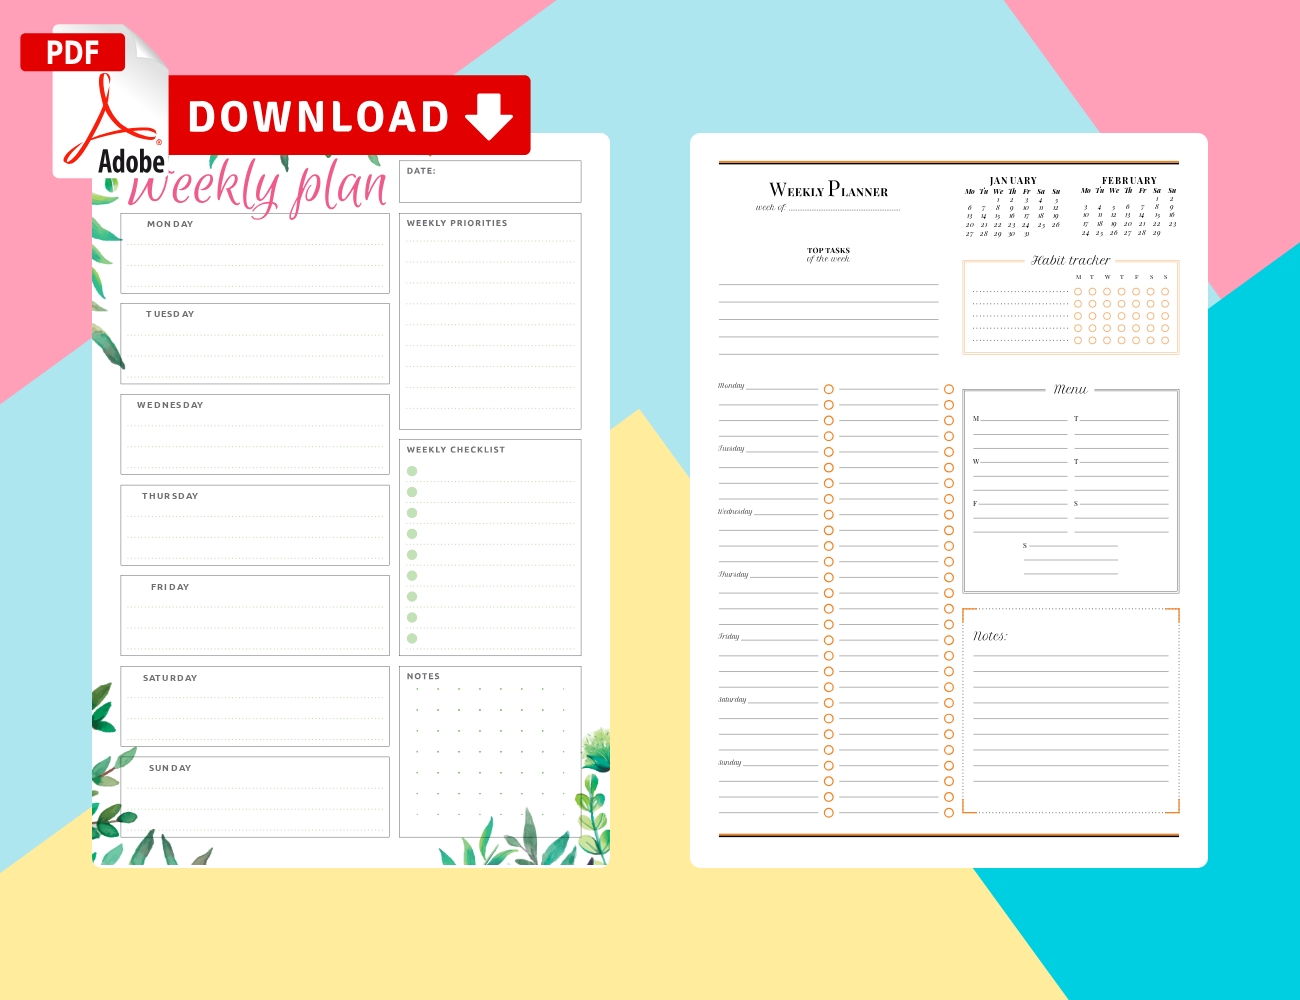 Printable Weekly Planner Templates - Download Pdf Week Calendar Template Pdf